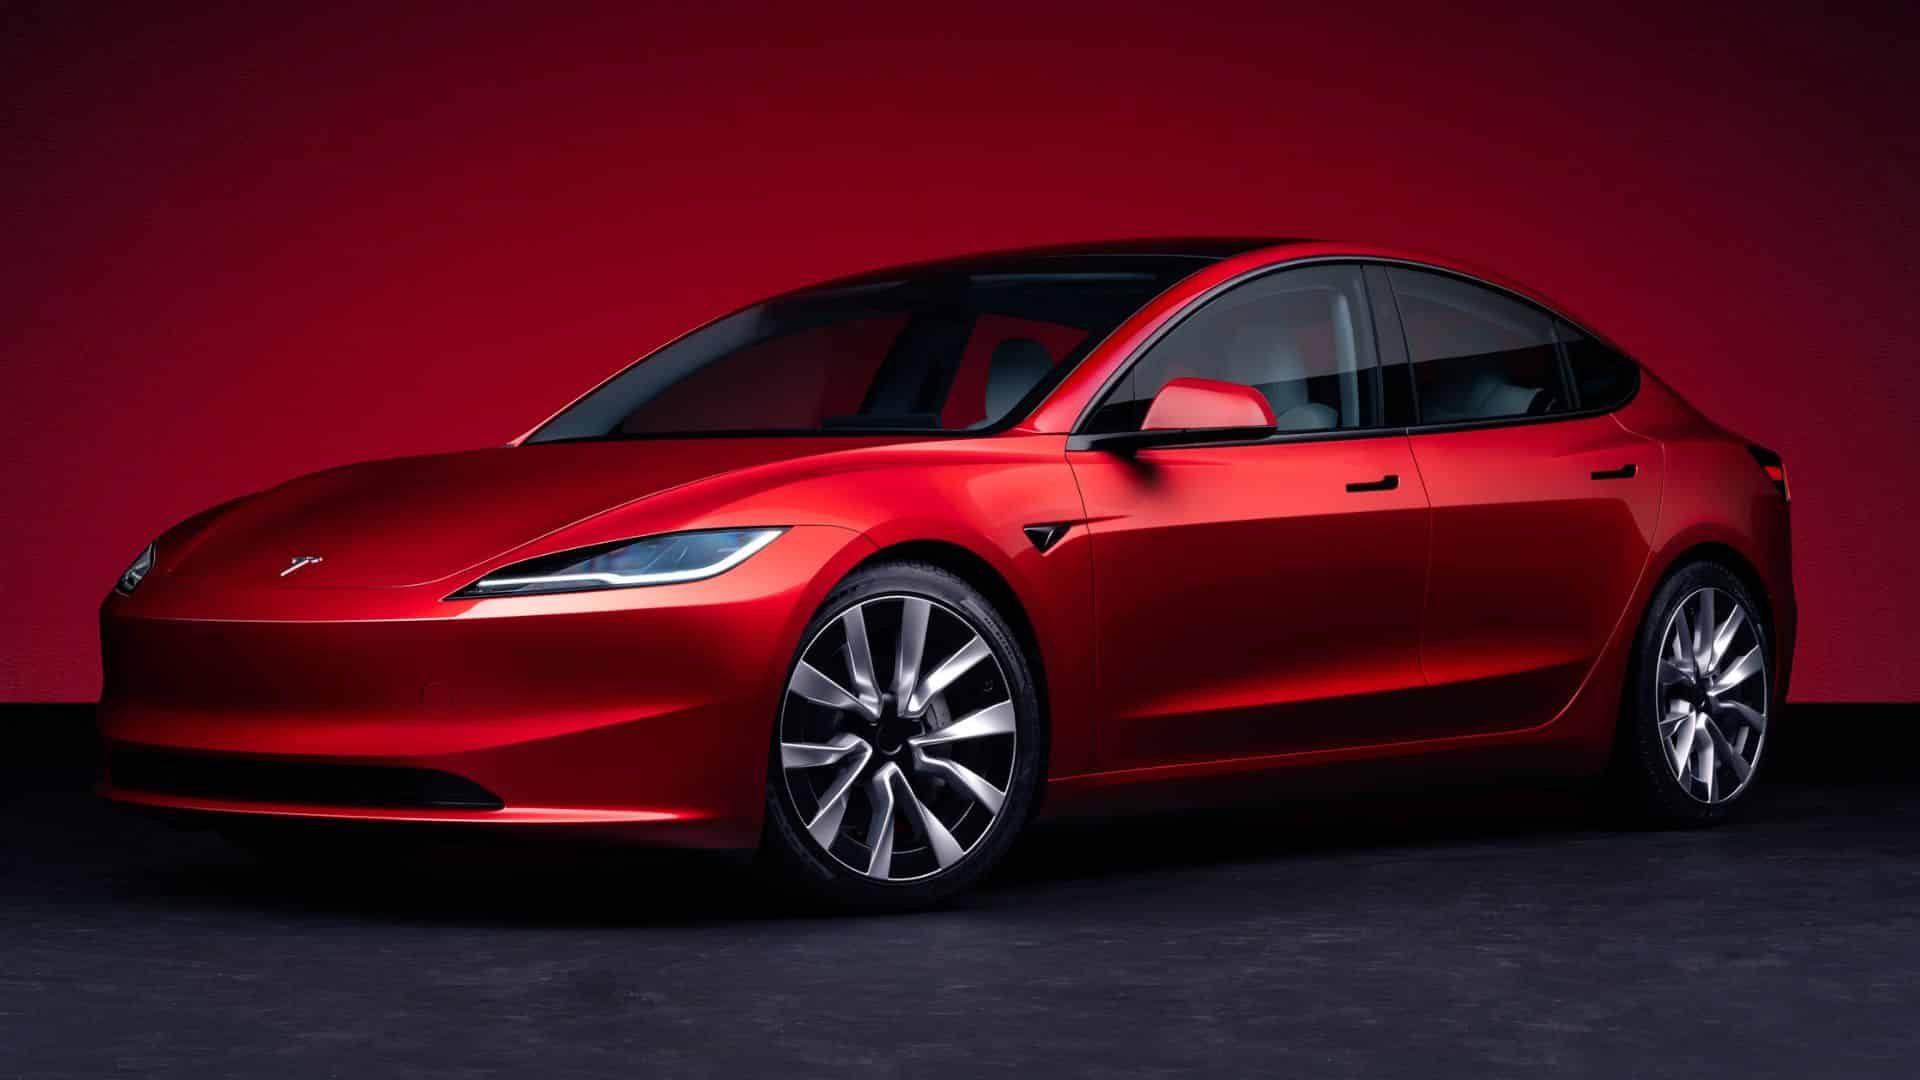 Couts réparation ? - Tesla Model 3 - Forum Automobile Propre